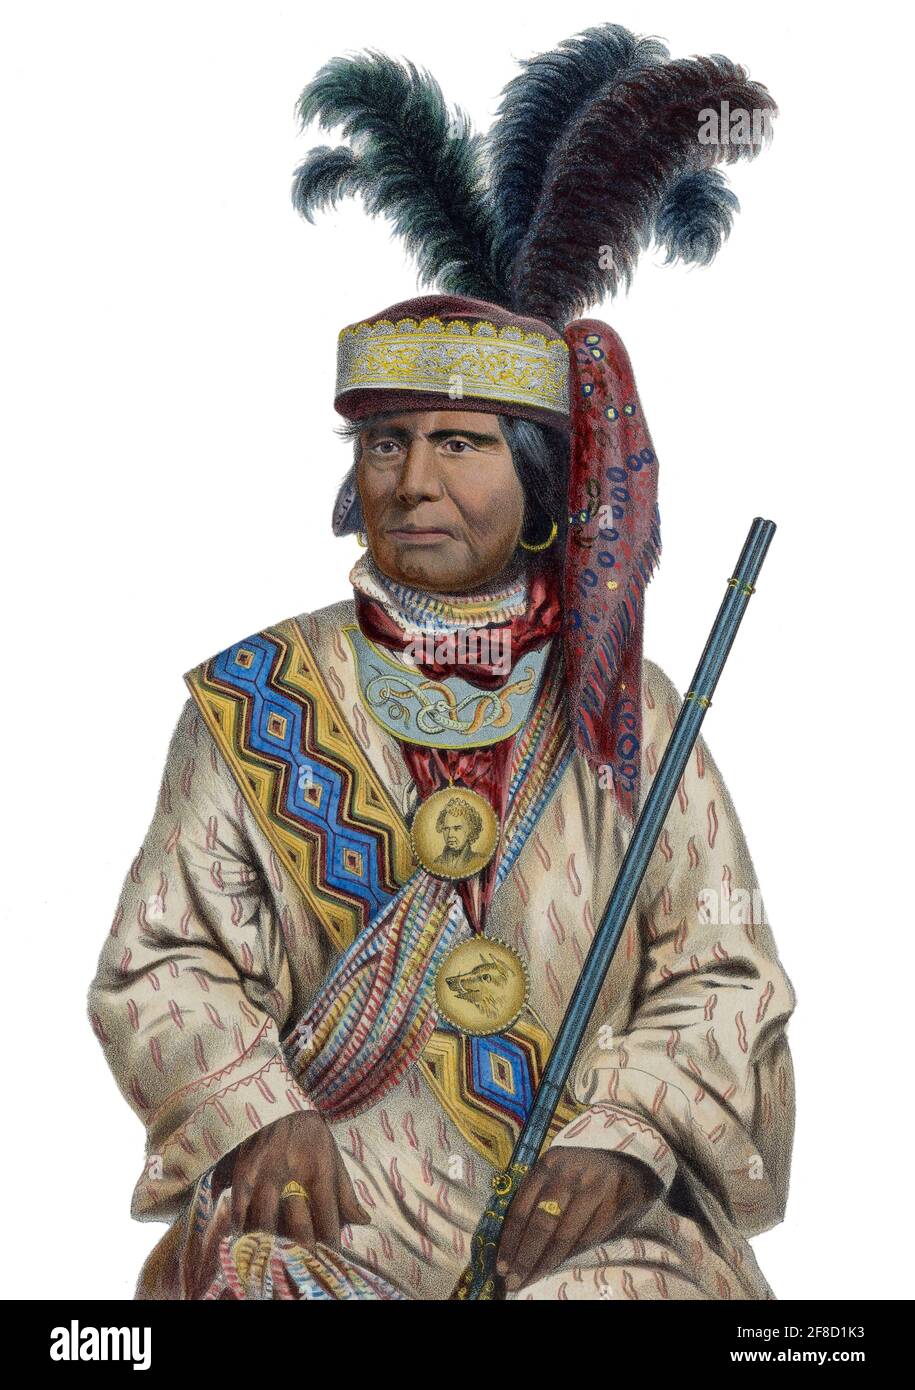 Il capo Billy Bowlegs (Holato Koniphatco Micco) (1810-c1859), noto anche come Billy Bolek, è stato un leader dei seminari in Florida durante la seconda e la terza guerra di Seminole contro gli Stati Uniti. Uno degli ultimi leader di Seminole a resistere, si trasferì nel territorio indiano nell'attuale Oklahoma. Foto Stock